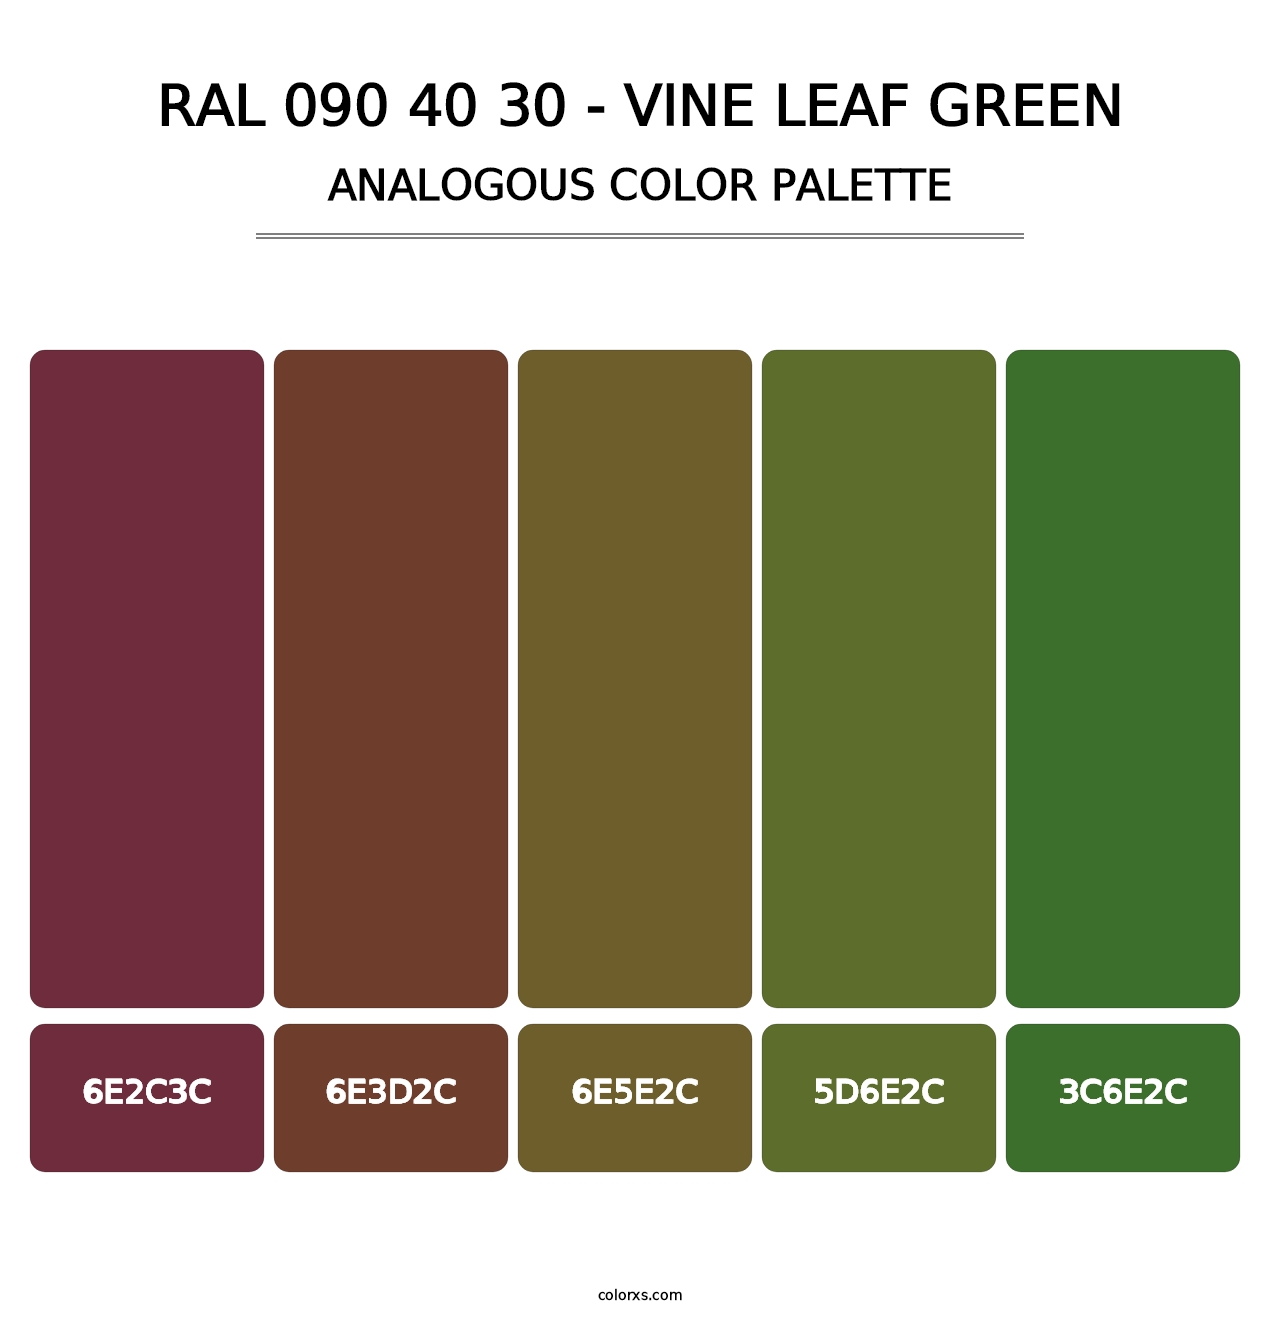 RAL 090 40 30 - Vine Leaf Green - Analogous Color Palette